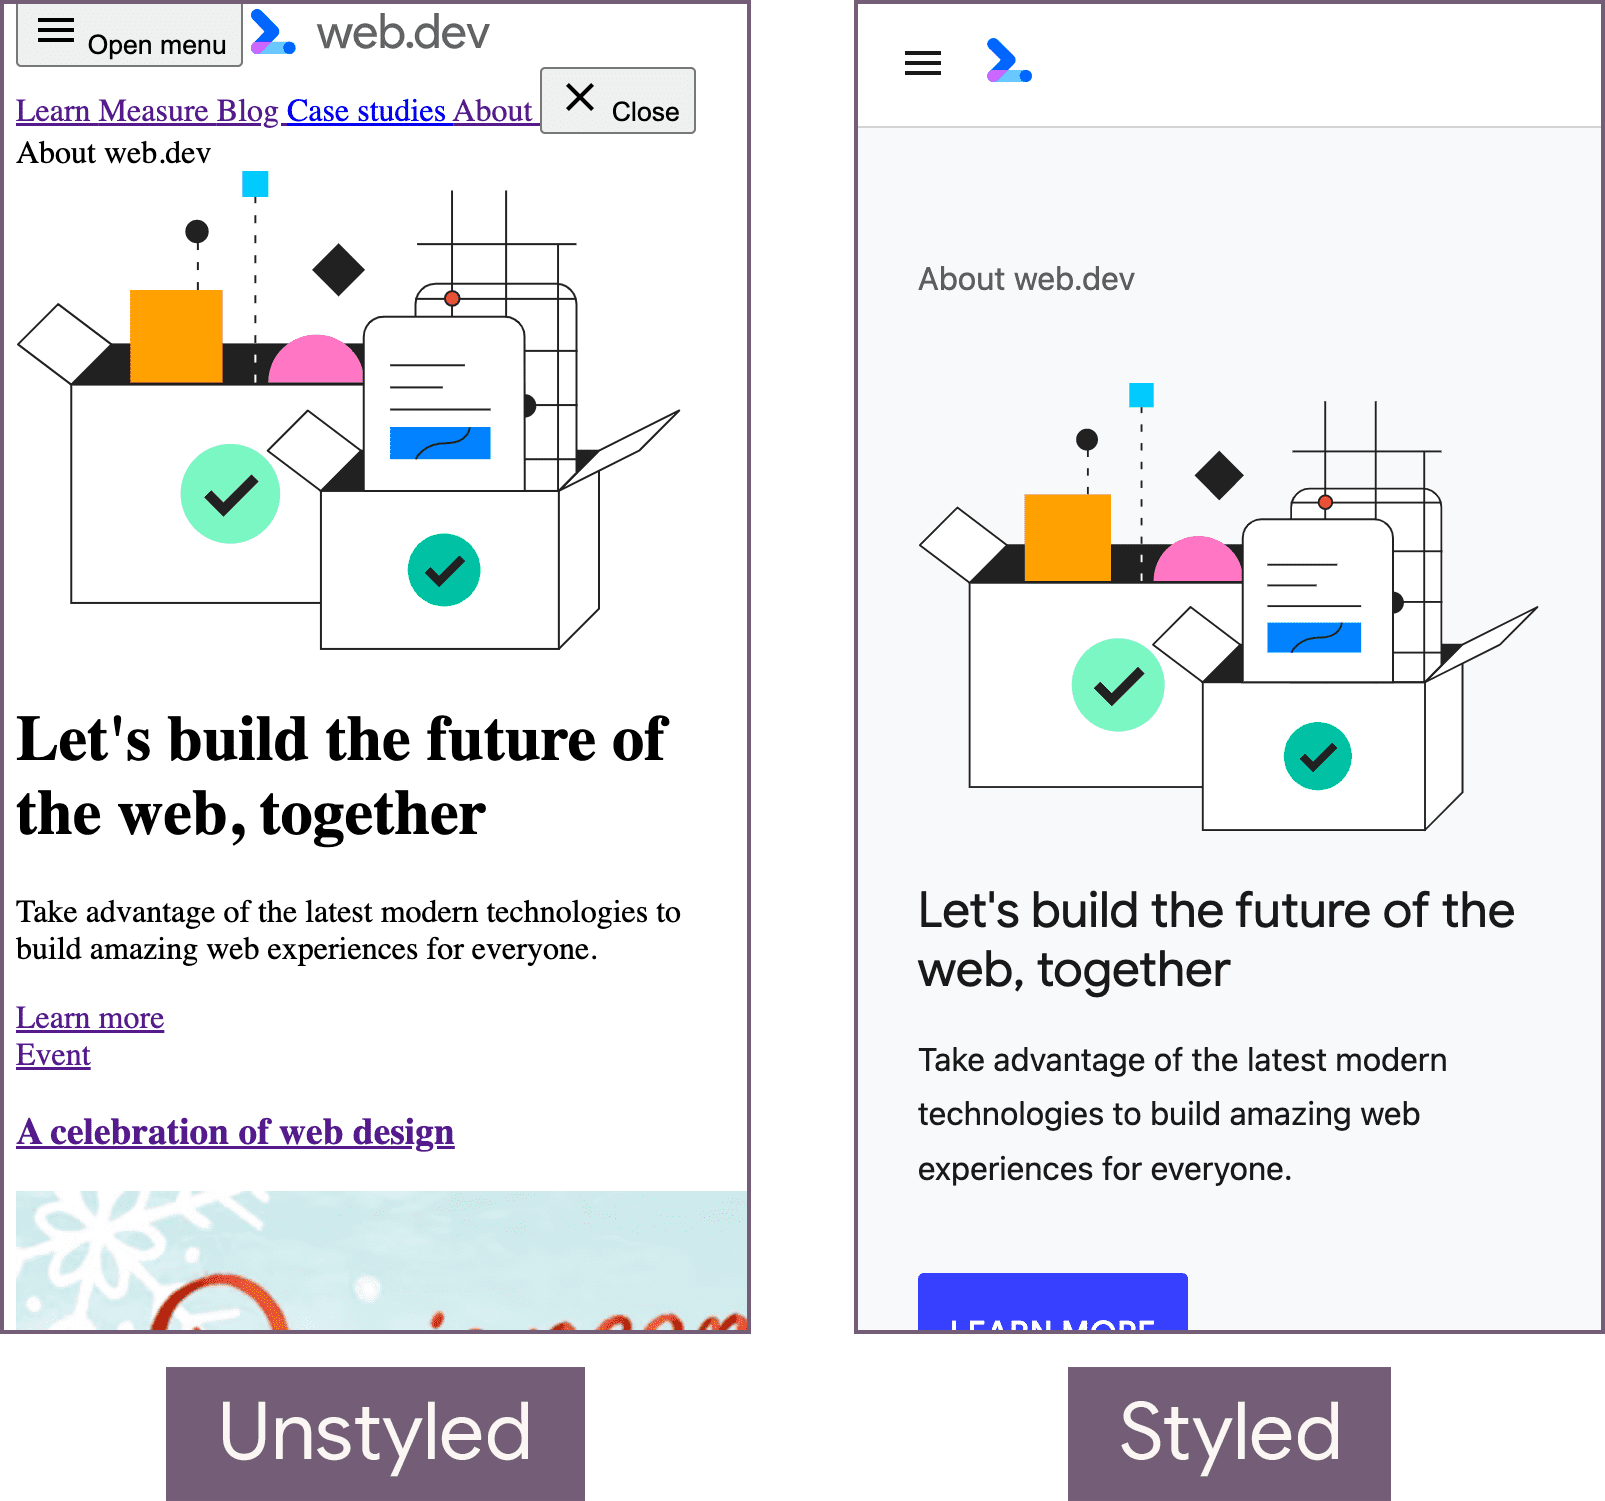 스타일이 지정되지 않은 상태 (왼쪽)와 스타일이 지정된 상태 (오른쪽)의 web.dev 홈페이지